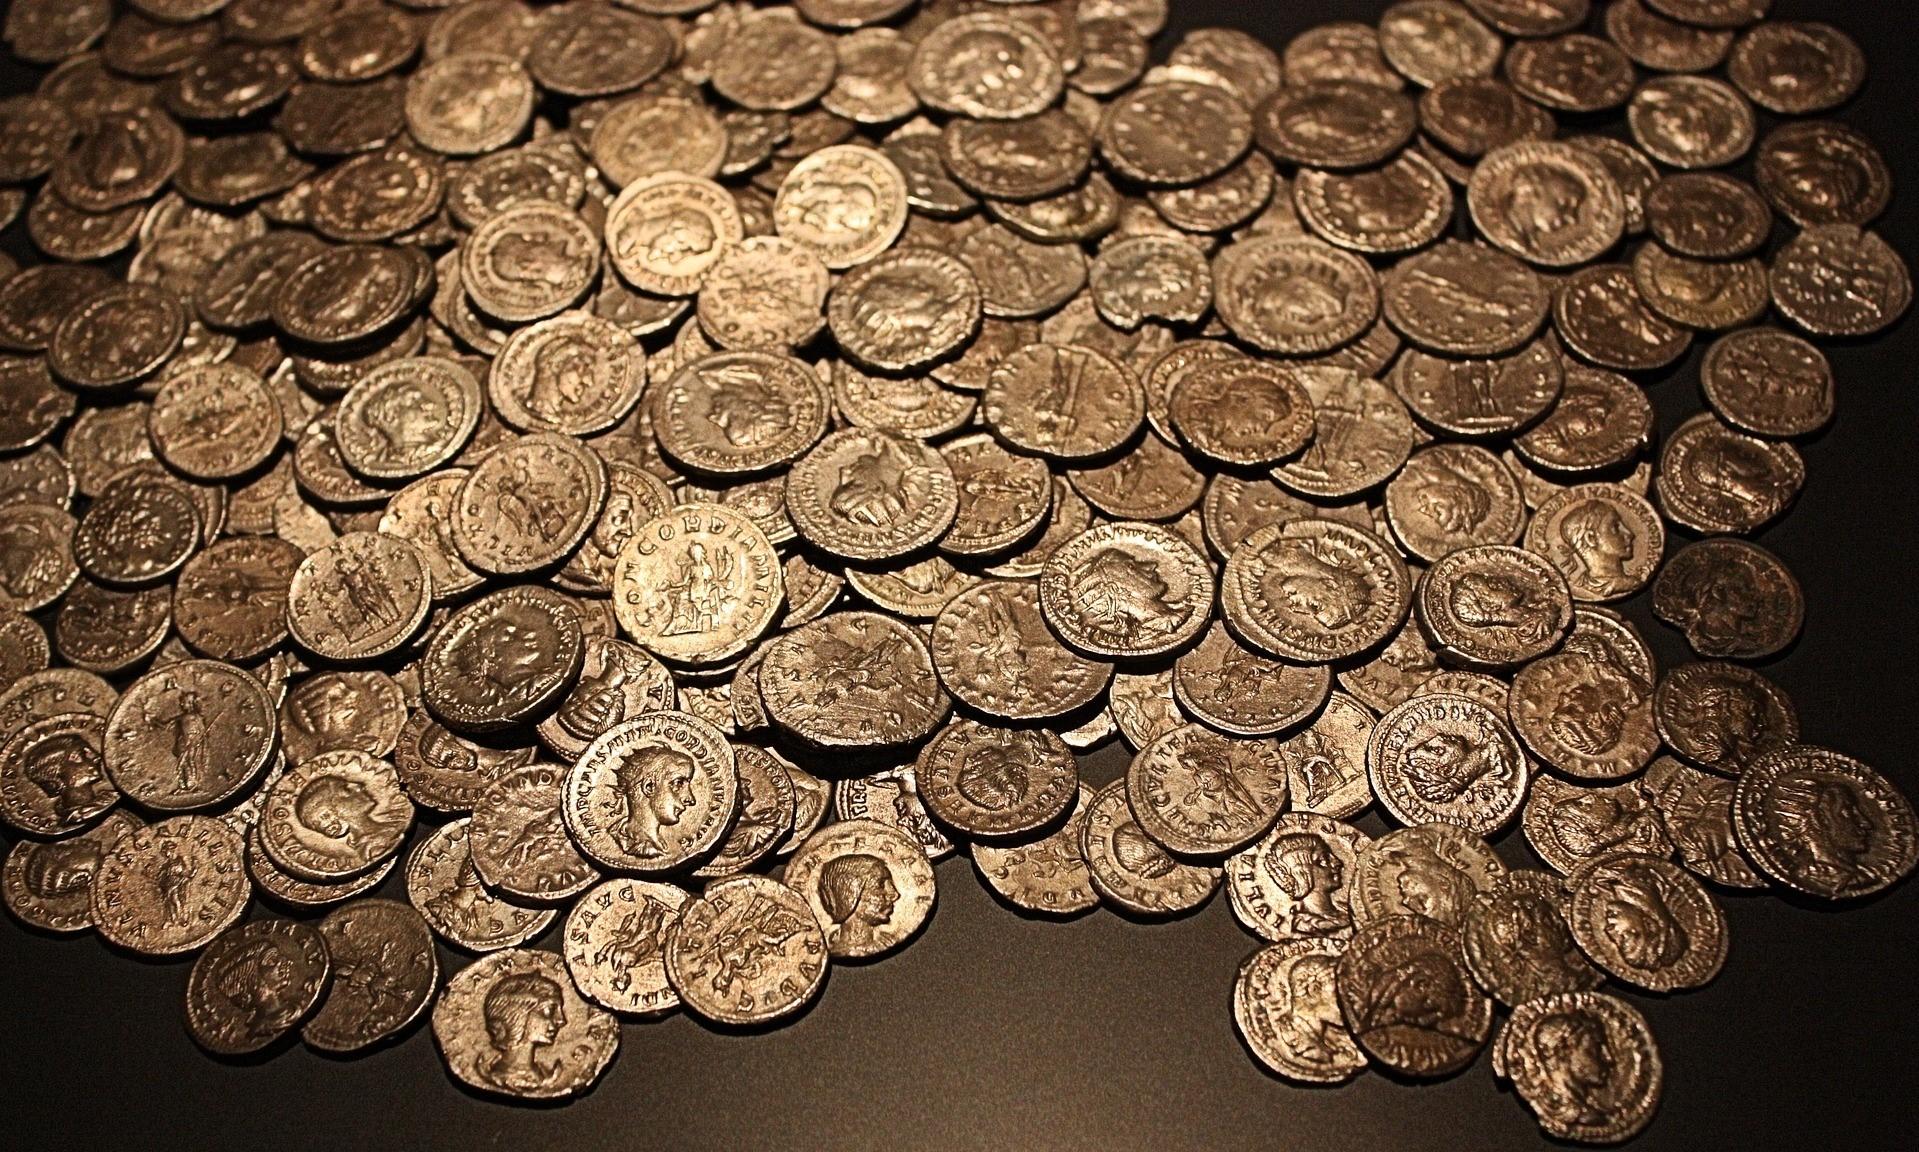 coins-2183470_1920.jpg